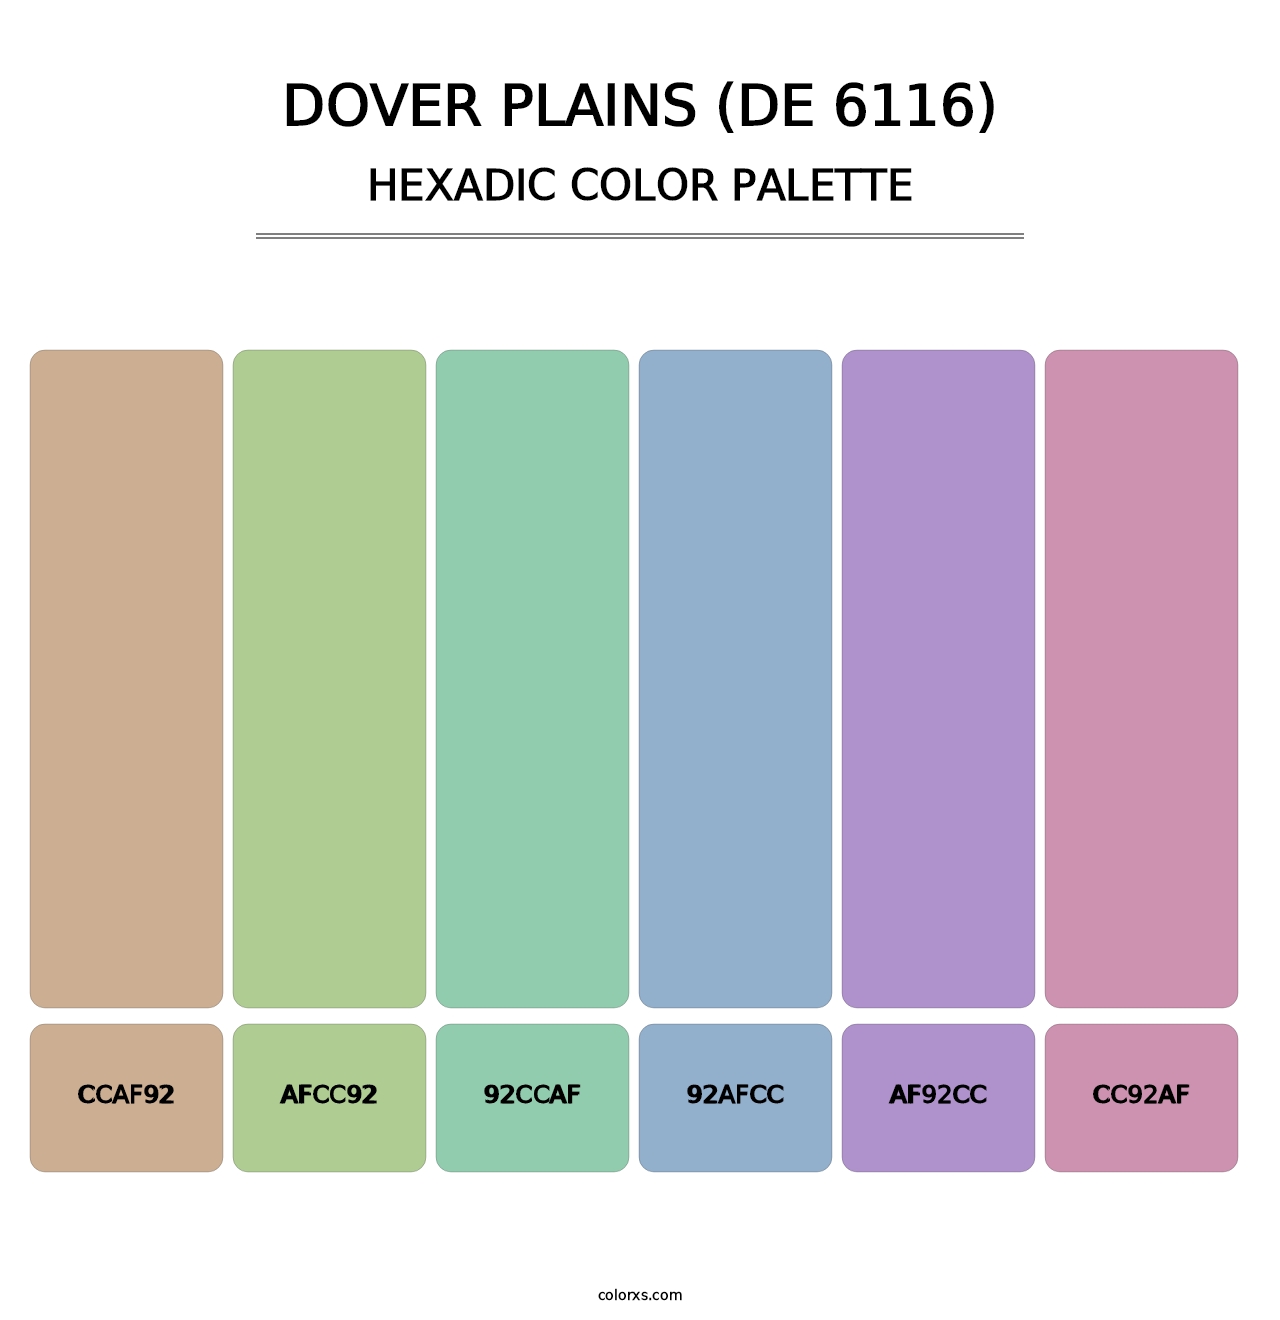 Dover Plains (DE 6116) - Hexadic Color Palette